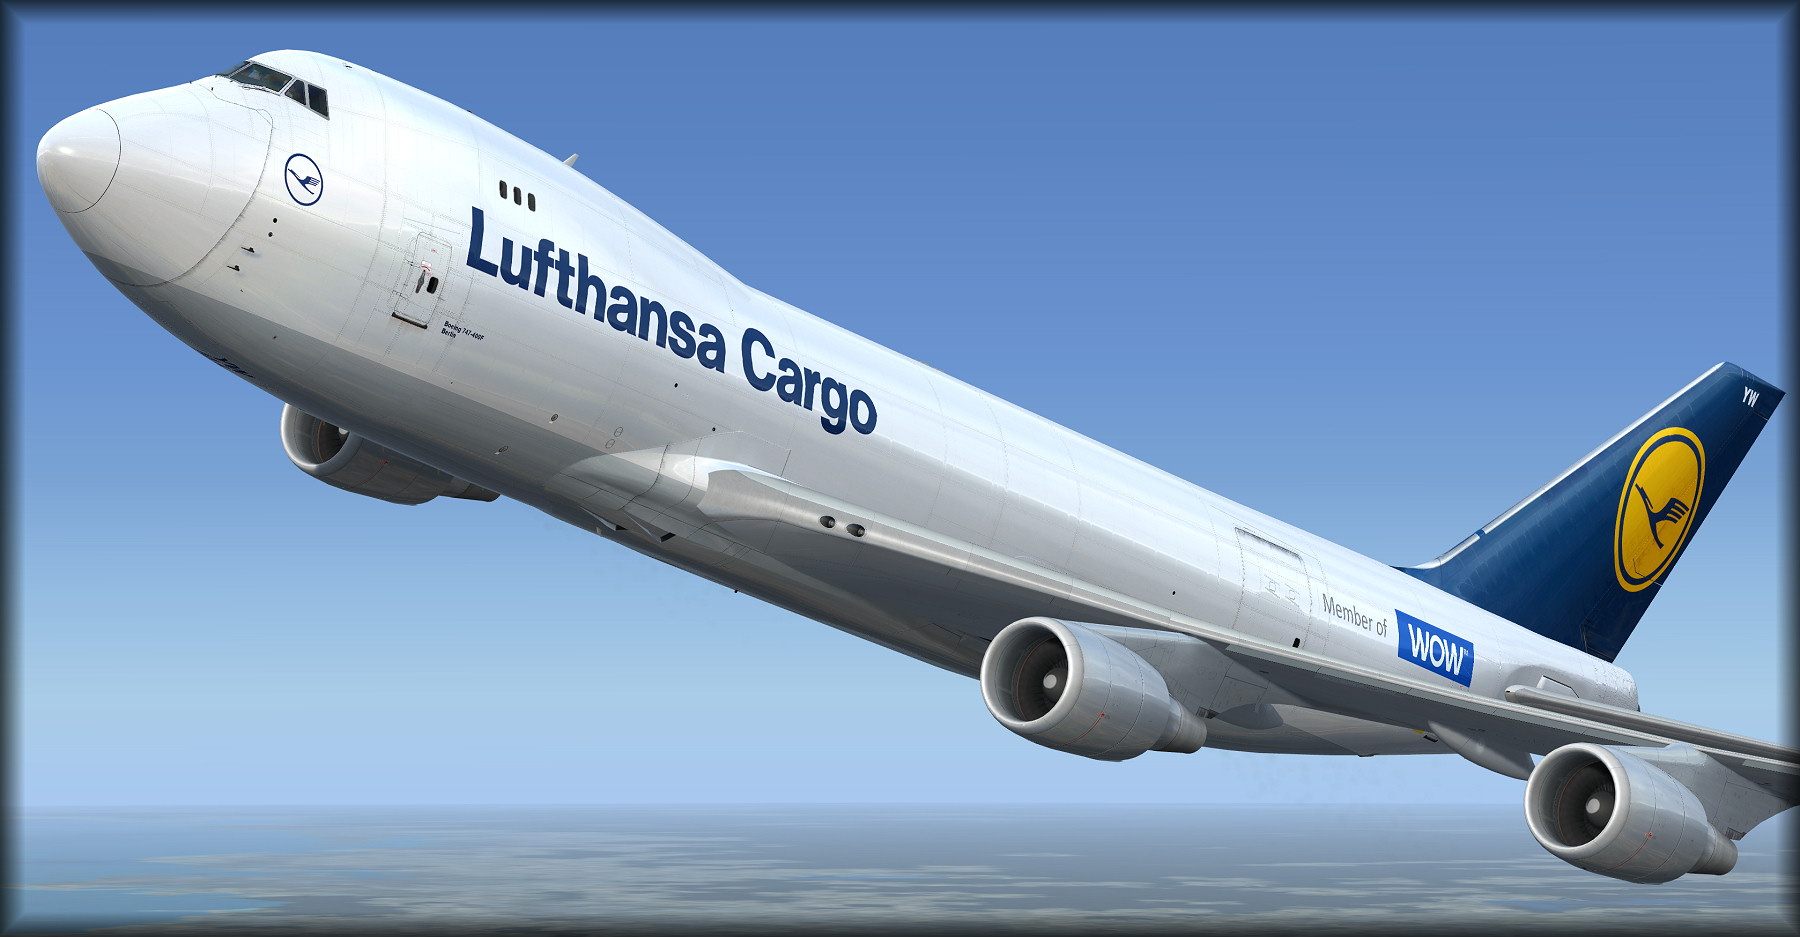 Pmdg 747-400 klm livery. 